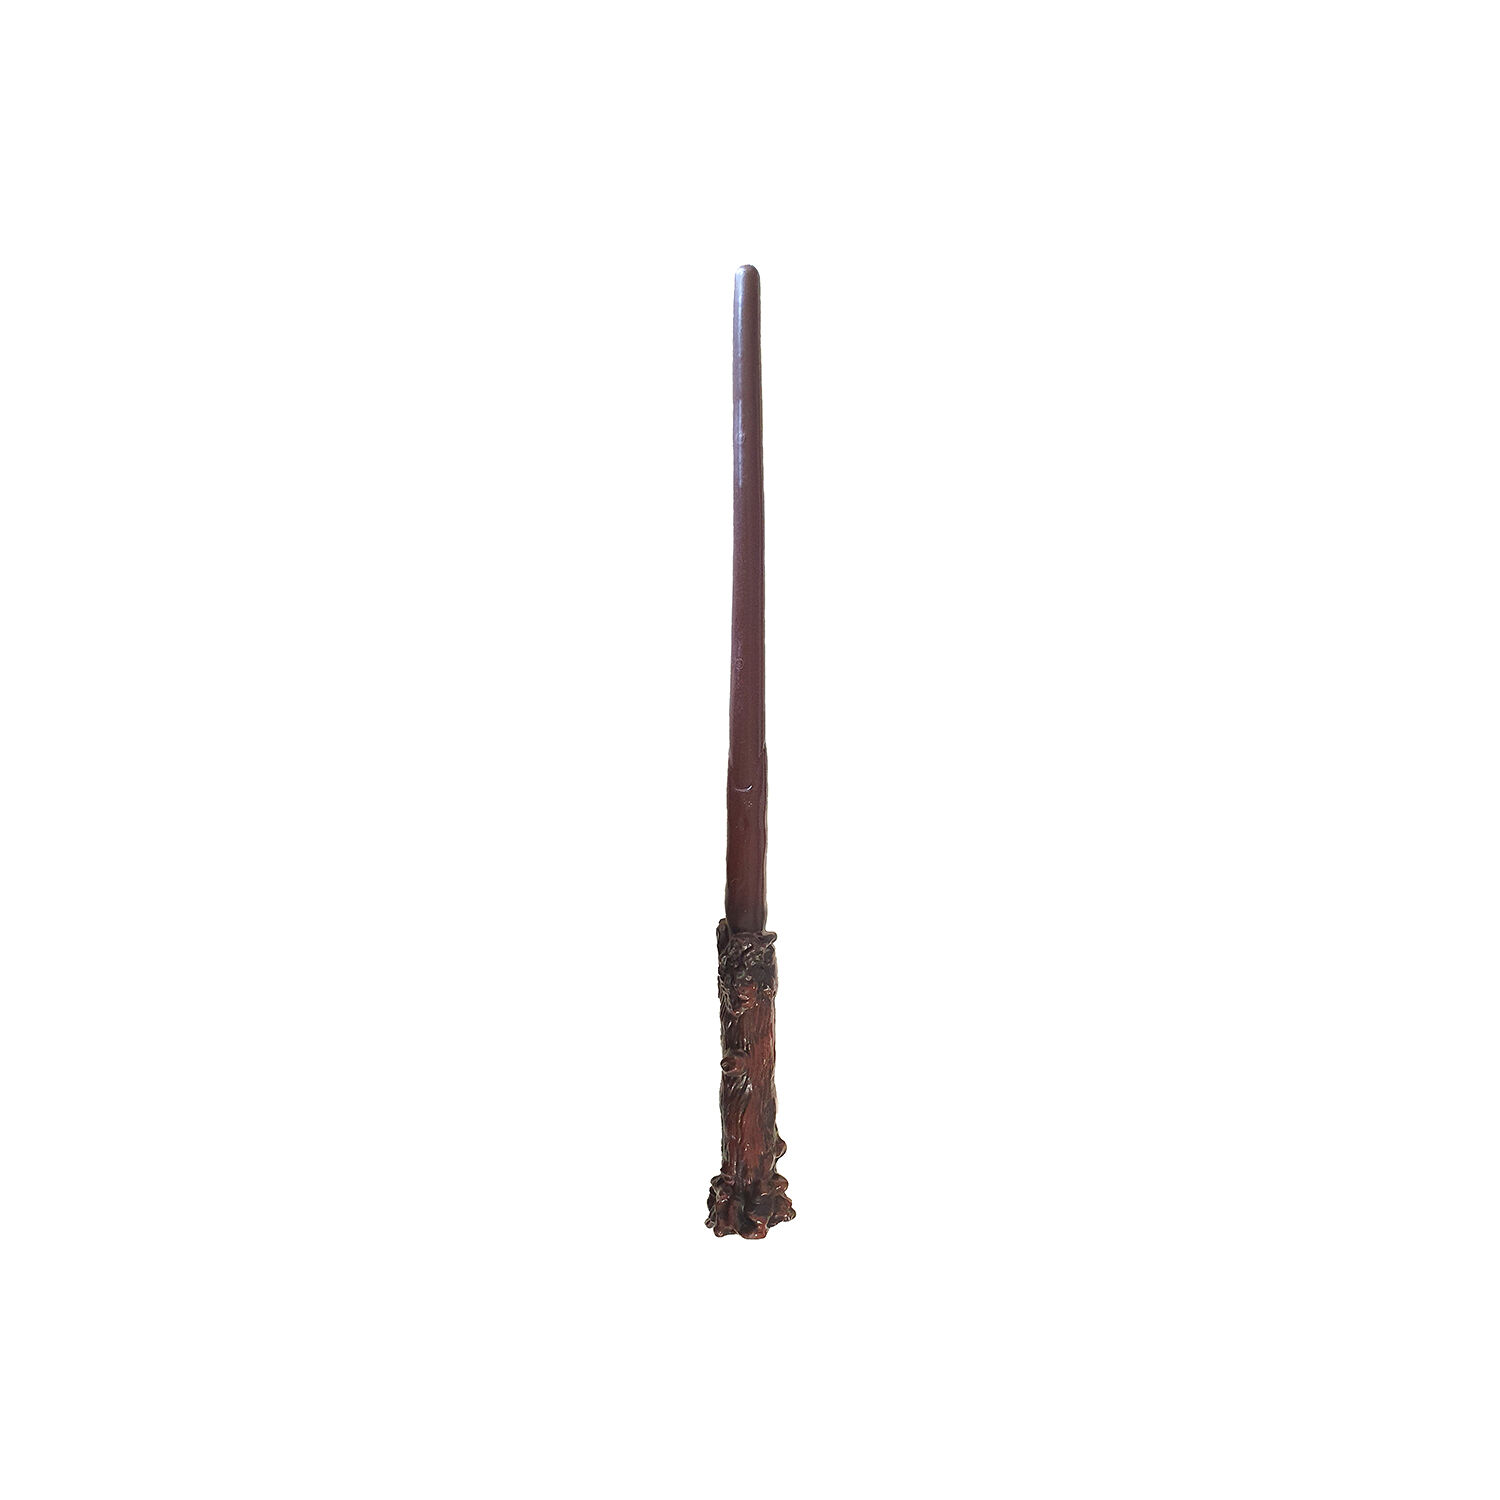 NEU Zauberstab von Harry Potter, inkl. Gryffindor-Abzeichen mit Clip Bild 2